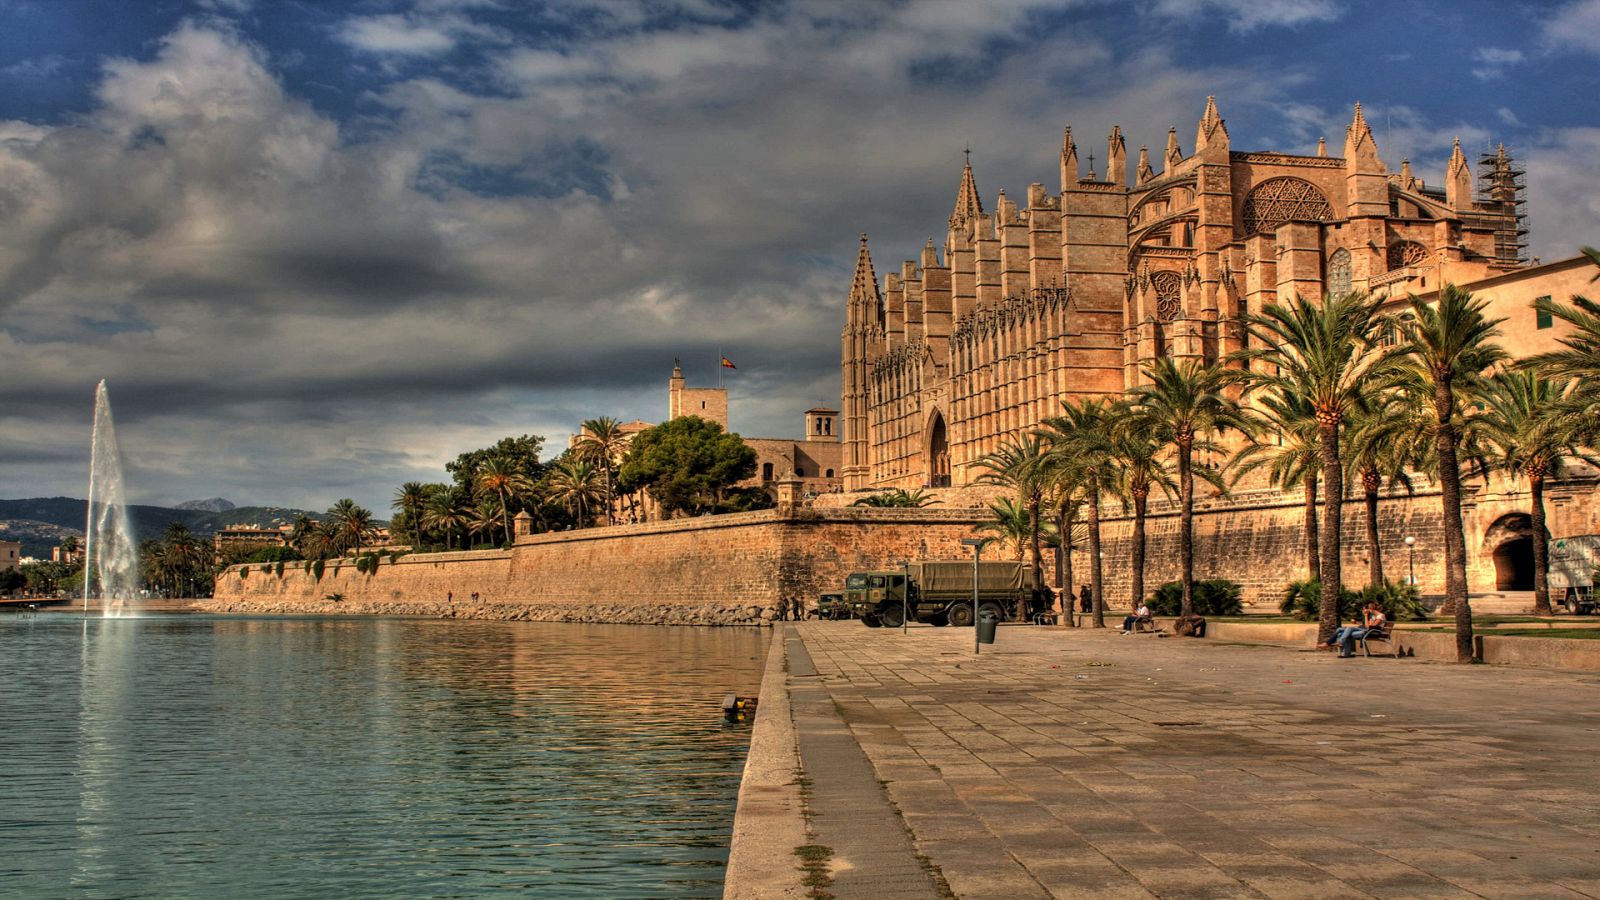 La Catedral de Palma, junto al mar, ha sido testigo de hechos sorprendes y leyendas de la ciudad mallorquina